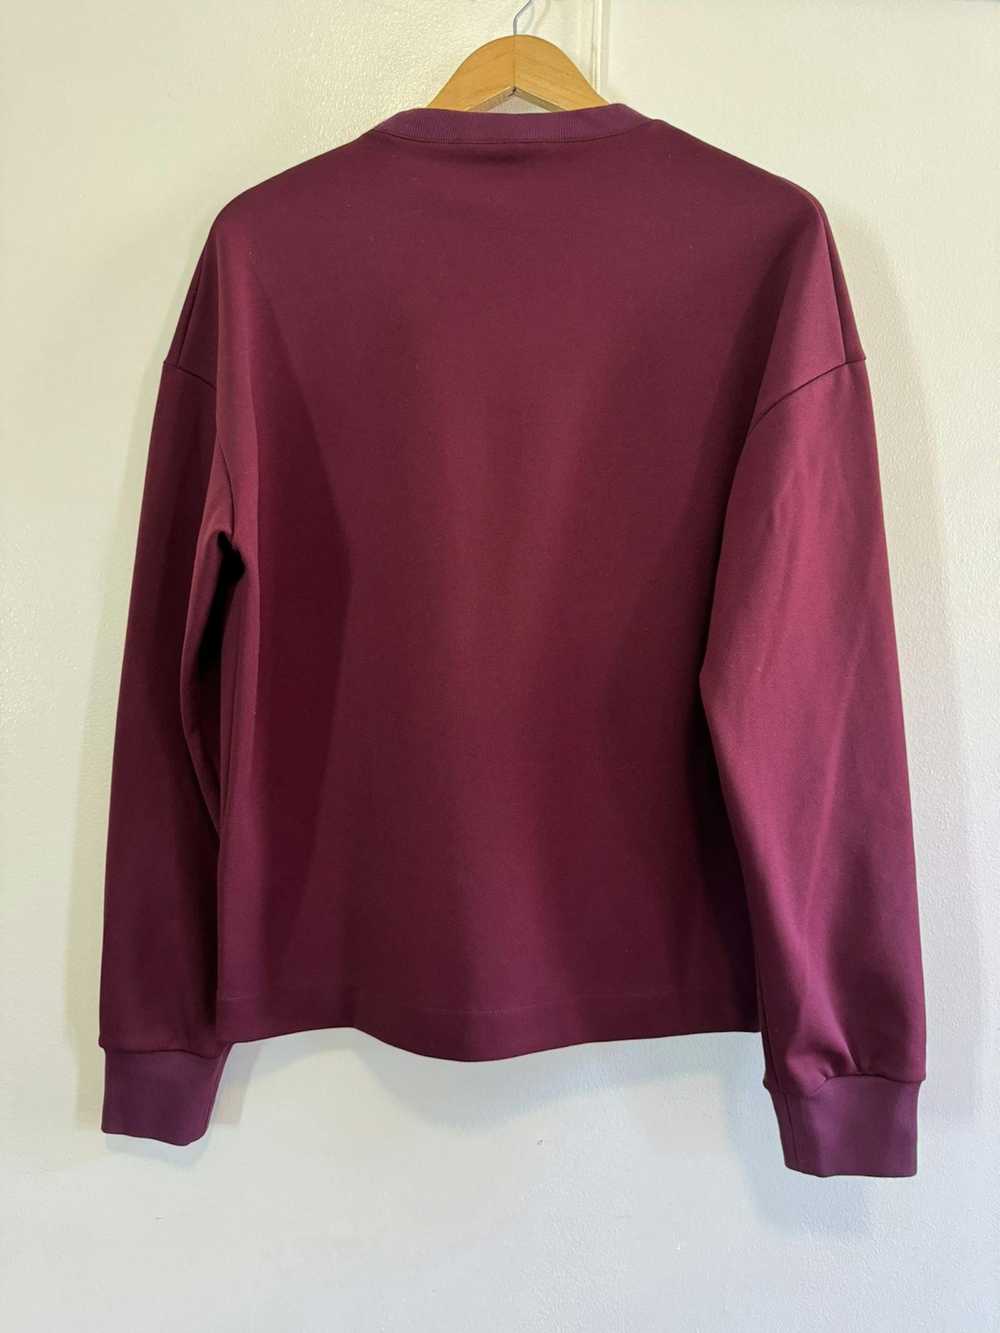 Jil Sander Jil Sander maroon burgundy sweatshirt … - image 4